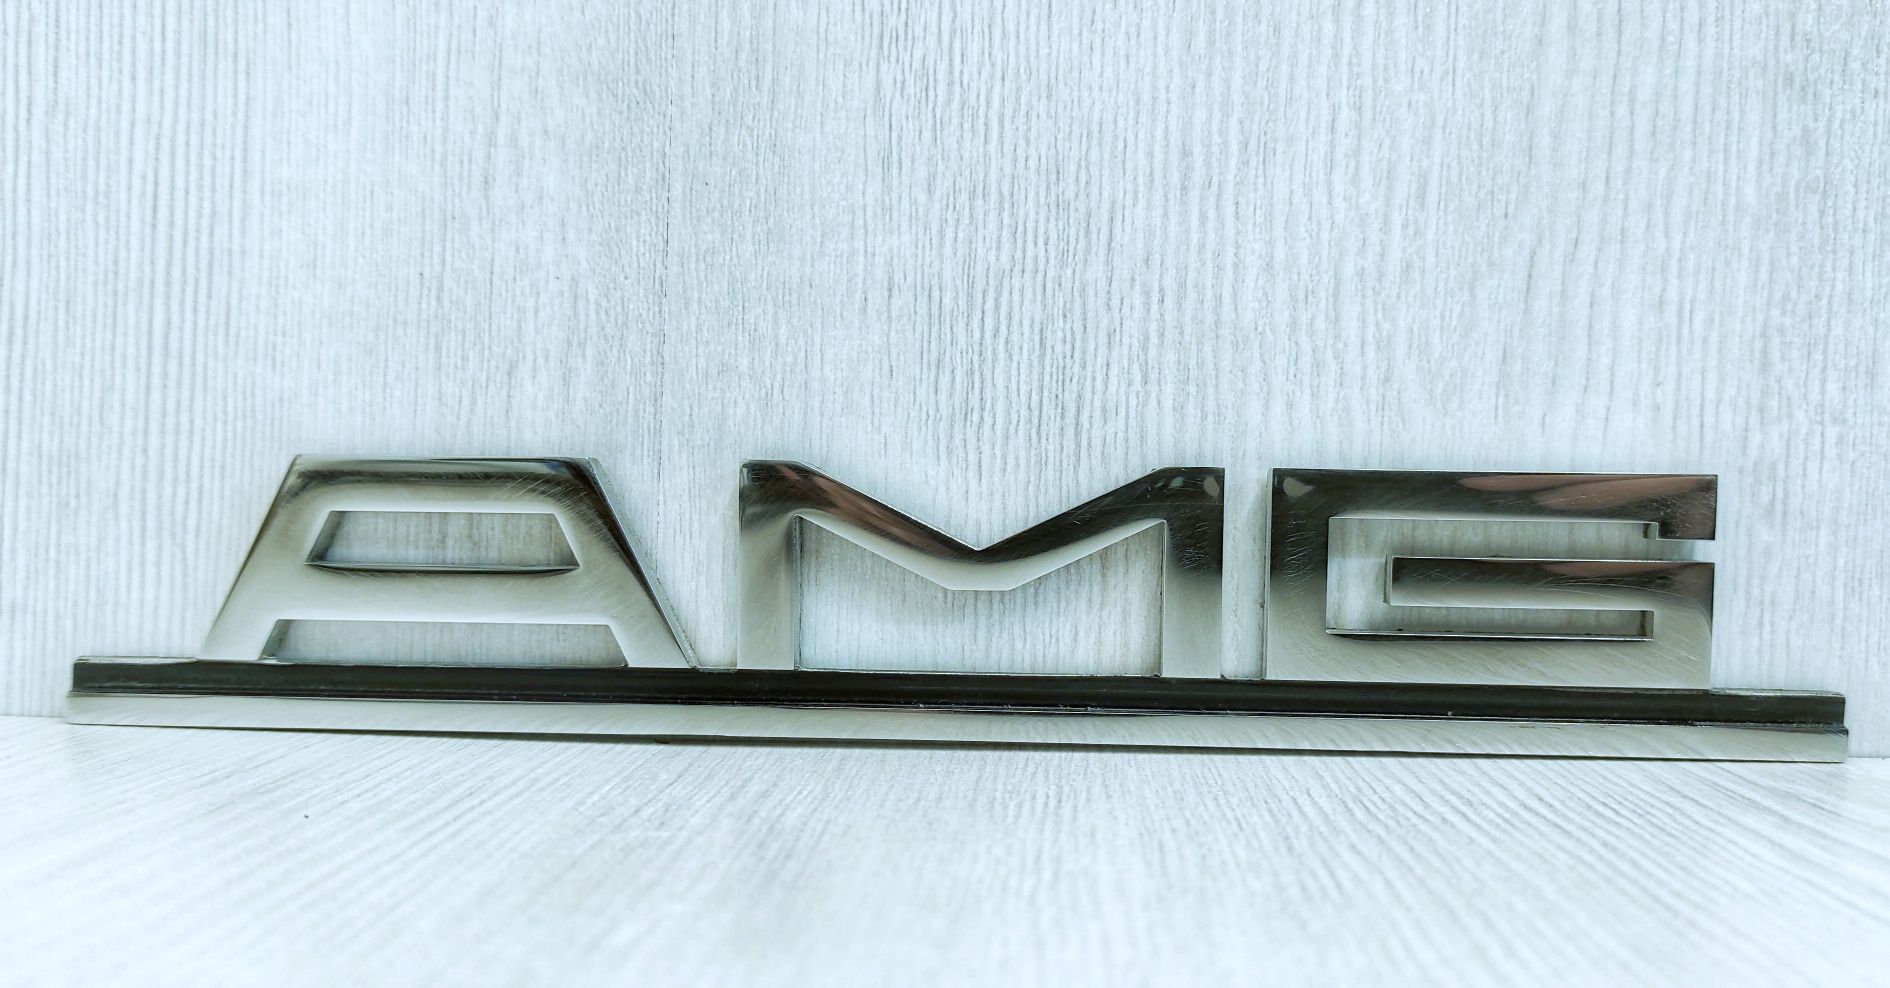 Шильд AMG Mercedes Benz w123-116-126